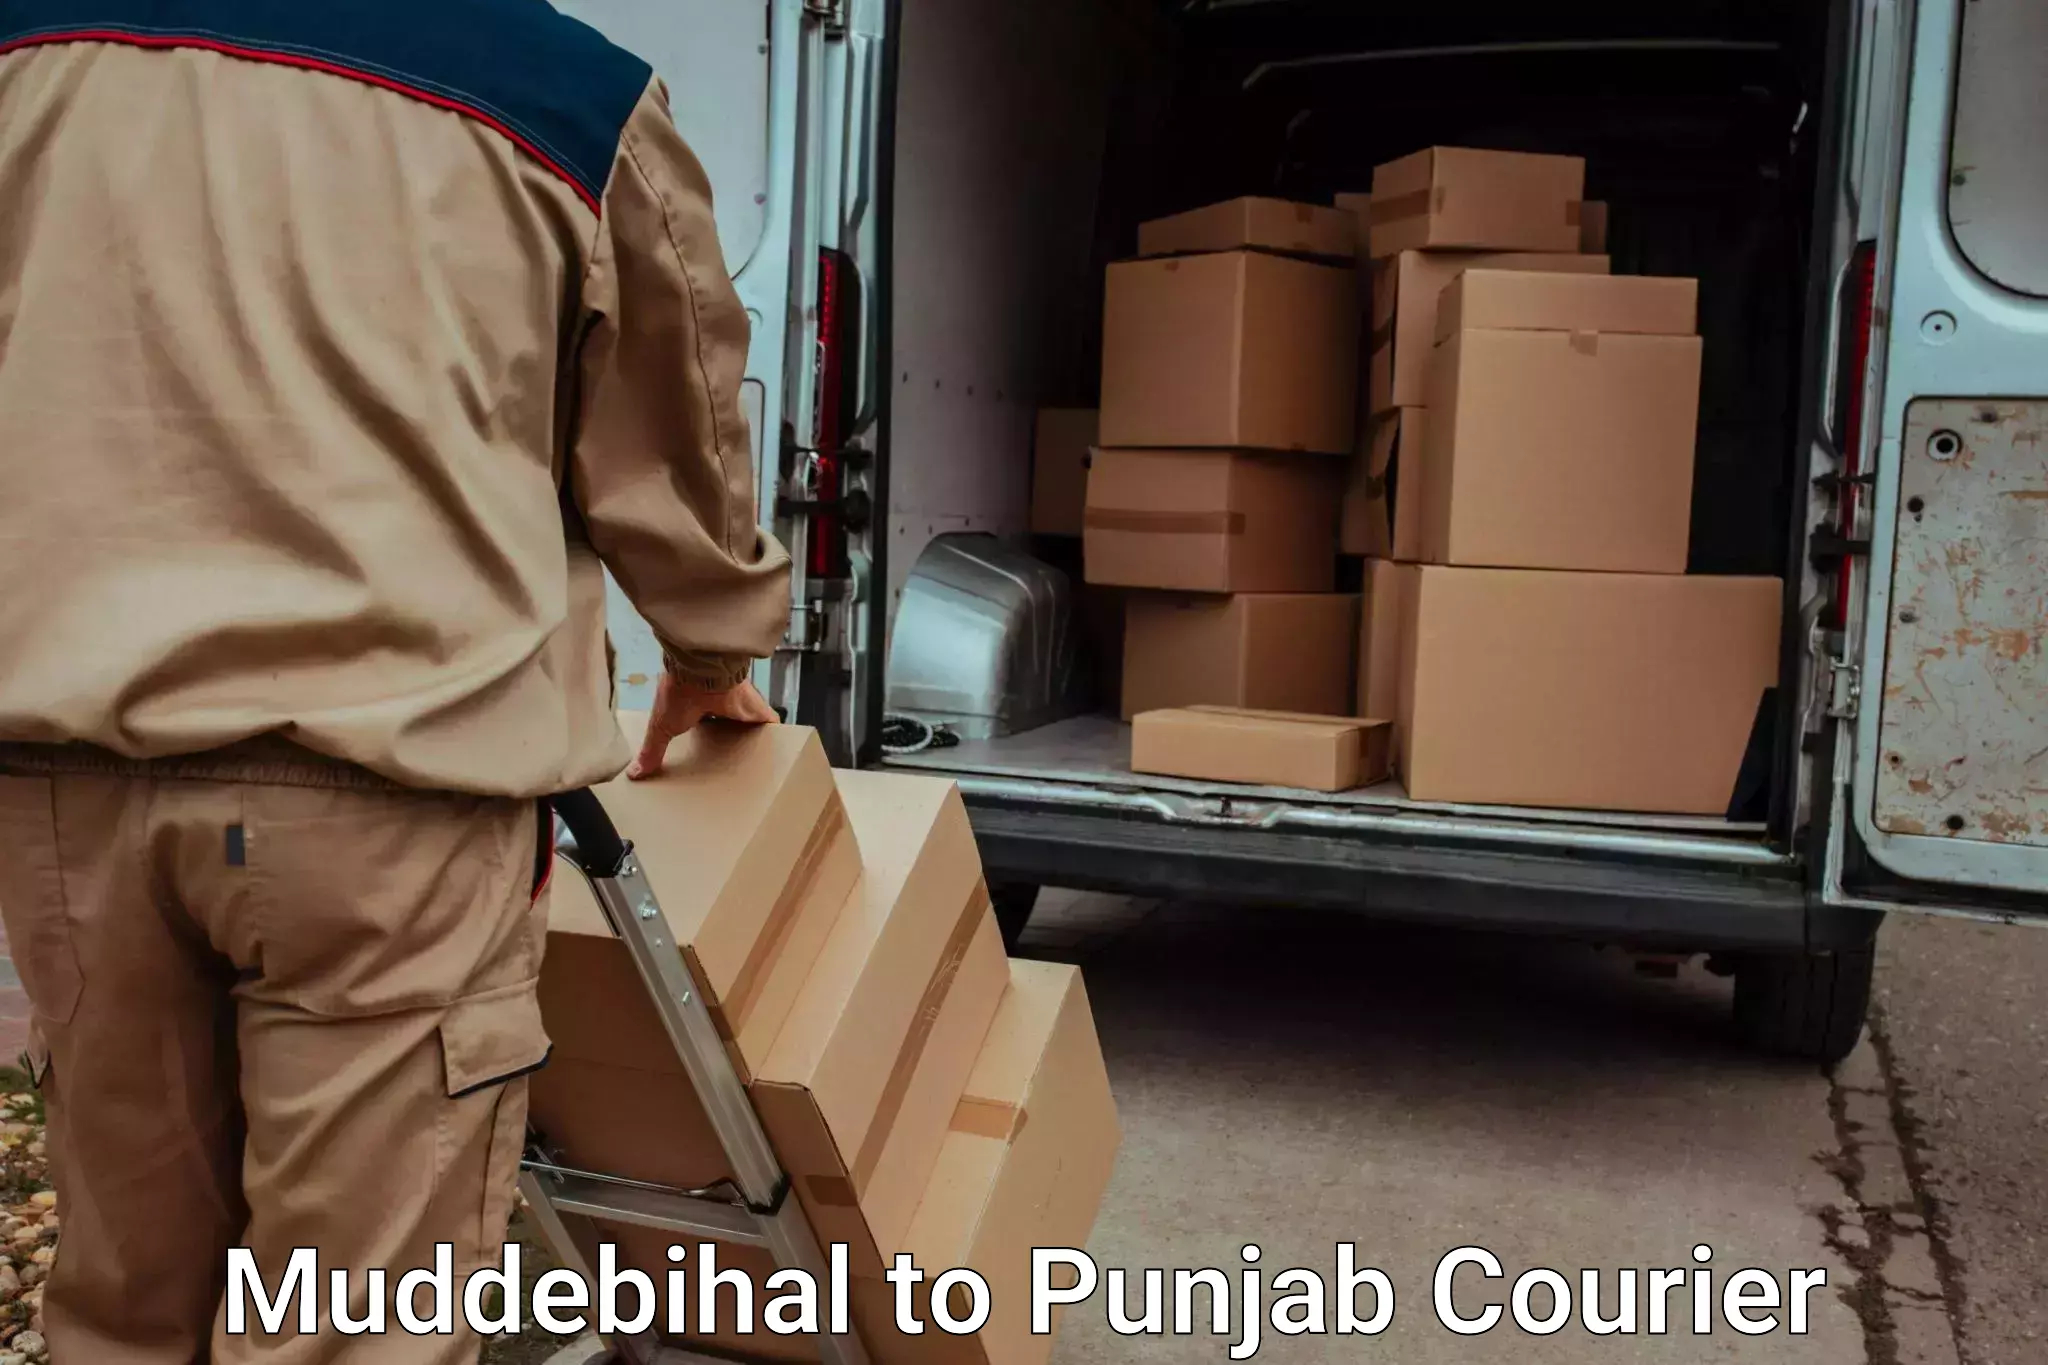 Door to door luggage delivery Muddebihal to Punjab